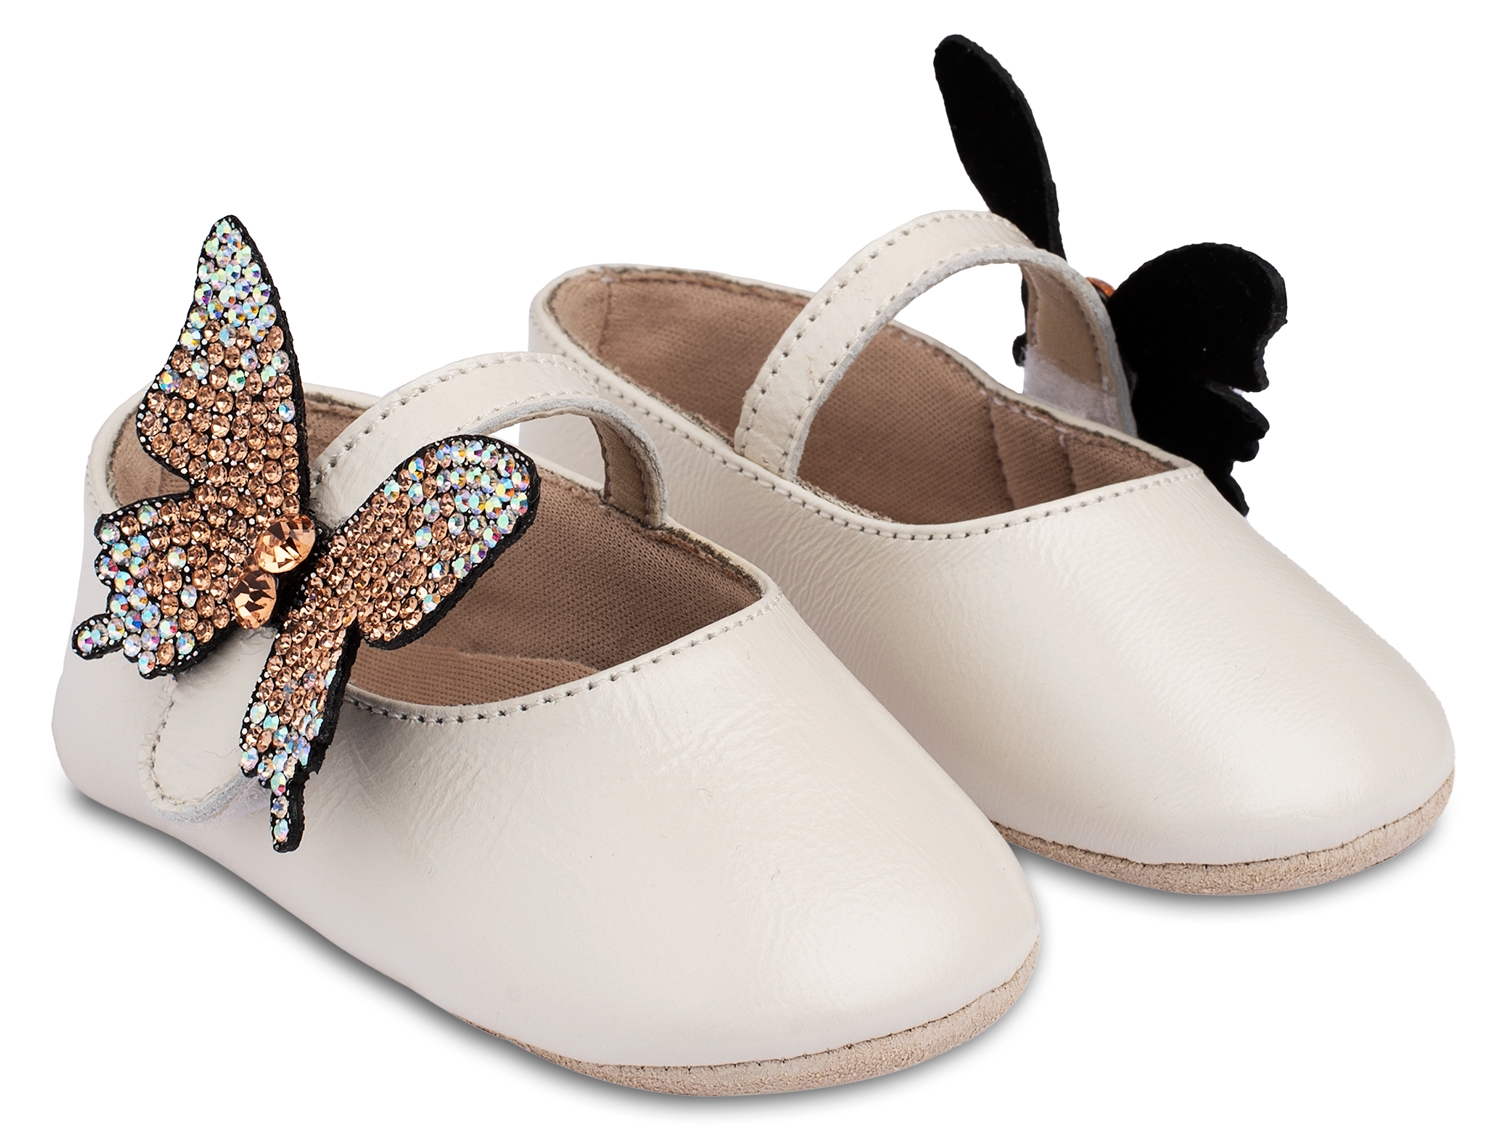 βαπτιστικό παιδικό παπούτσι αγκαλιάς για κορίτσι πεταλούδα στρας : 1